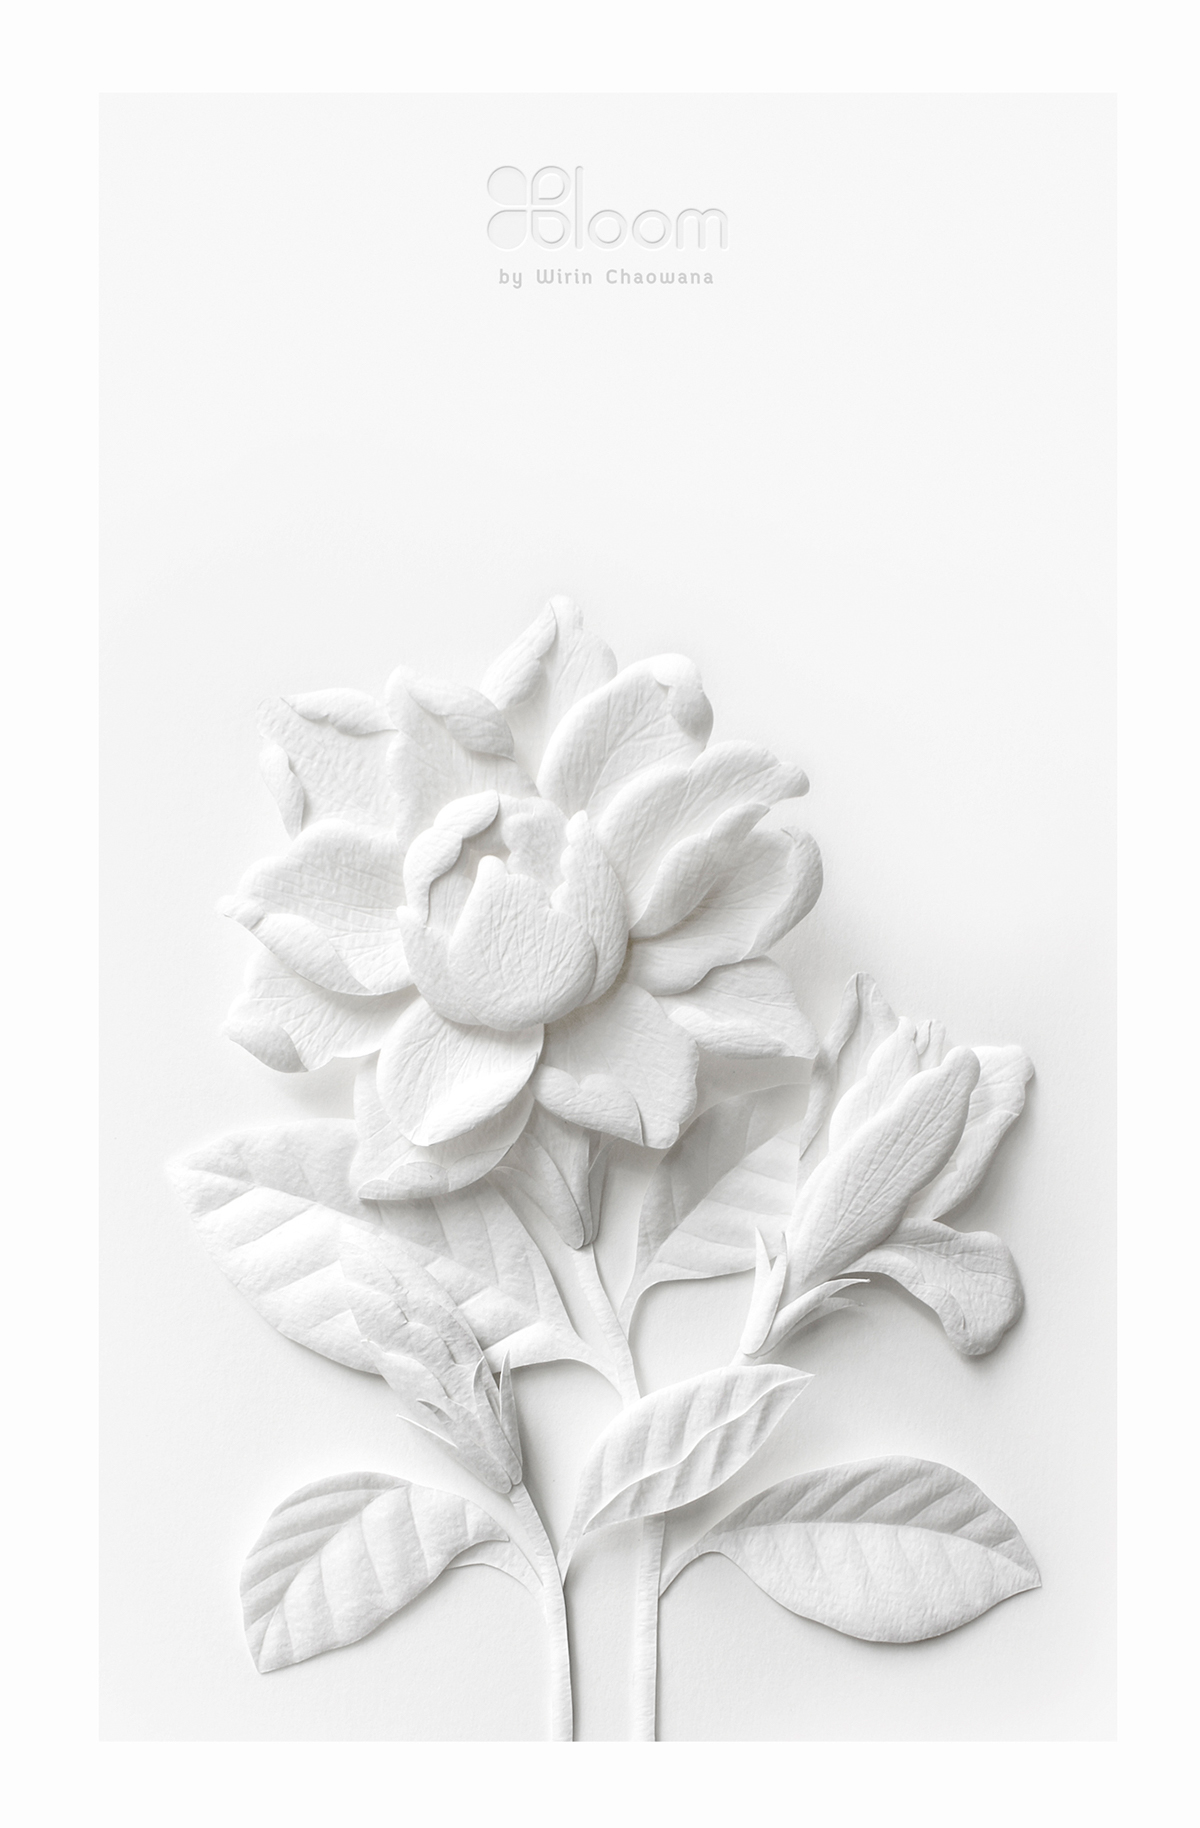 papercraft  papersculpture  paper  white  flower  craft  handmade  Thai  calendar   card  sculpture